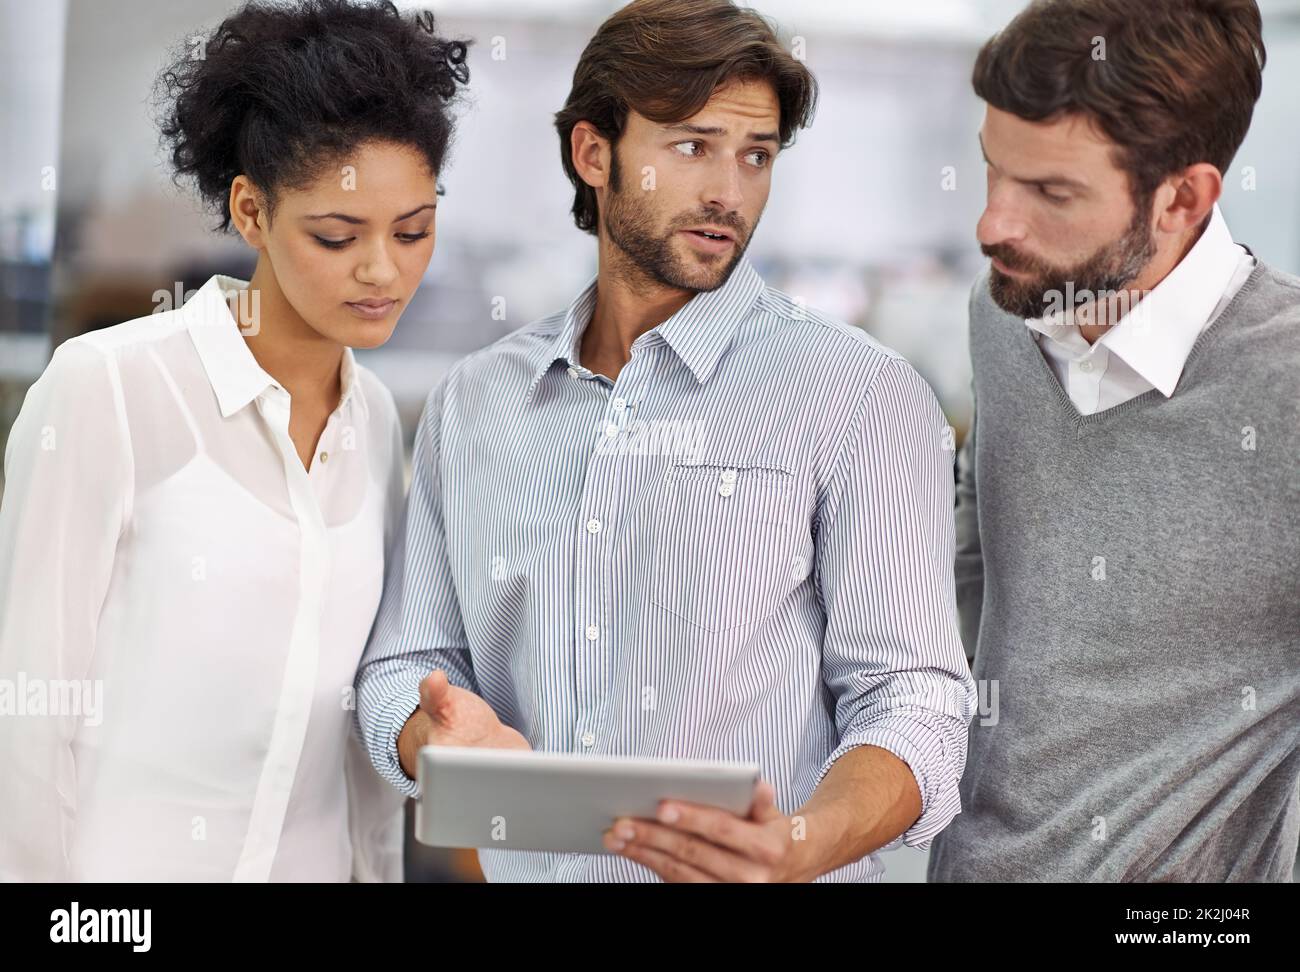 Gehen Sie über die Projekte Online-Präsenz. Aufnahme von drei jungen Geschäftsleuten, die in seinem Büro stehen und über ein Tablet reden. Stockfoto